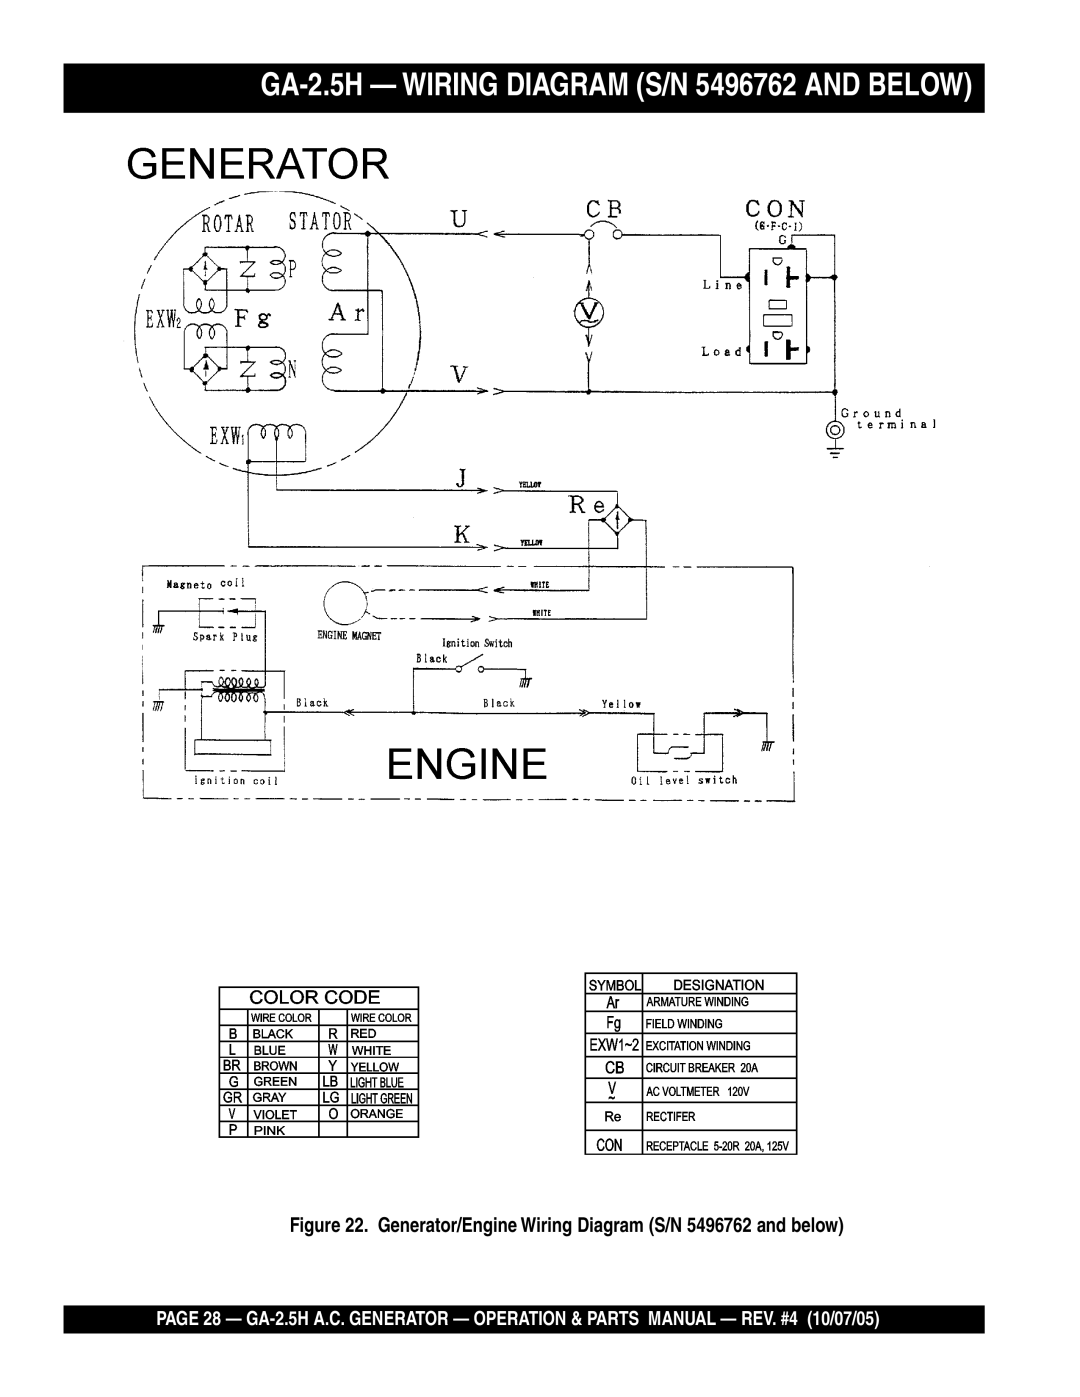 Honda Power Equipment manual GA-2.5H Wiring Diagram S/N 5496762 and below 